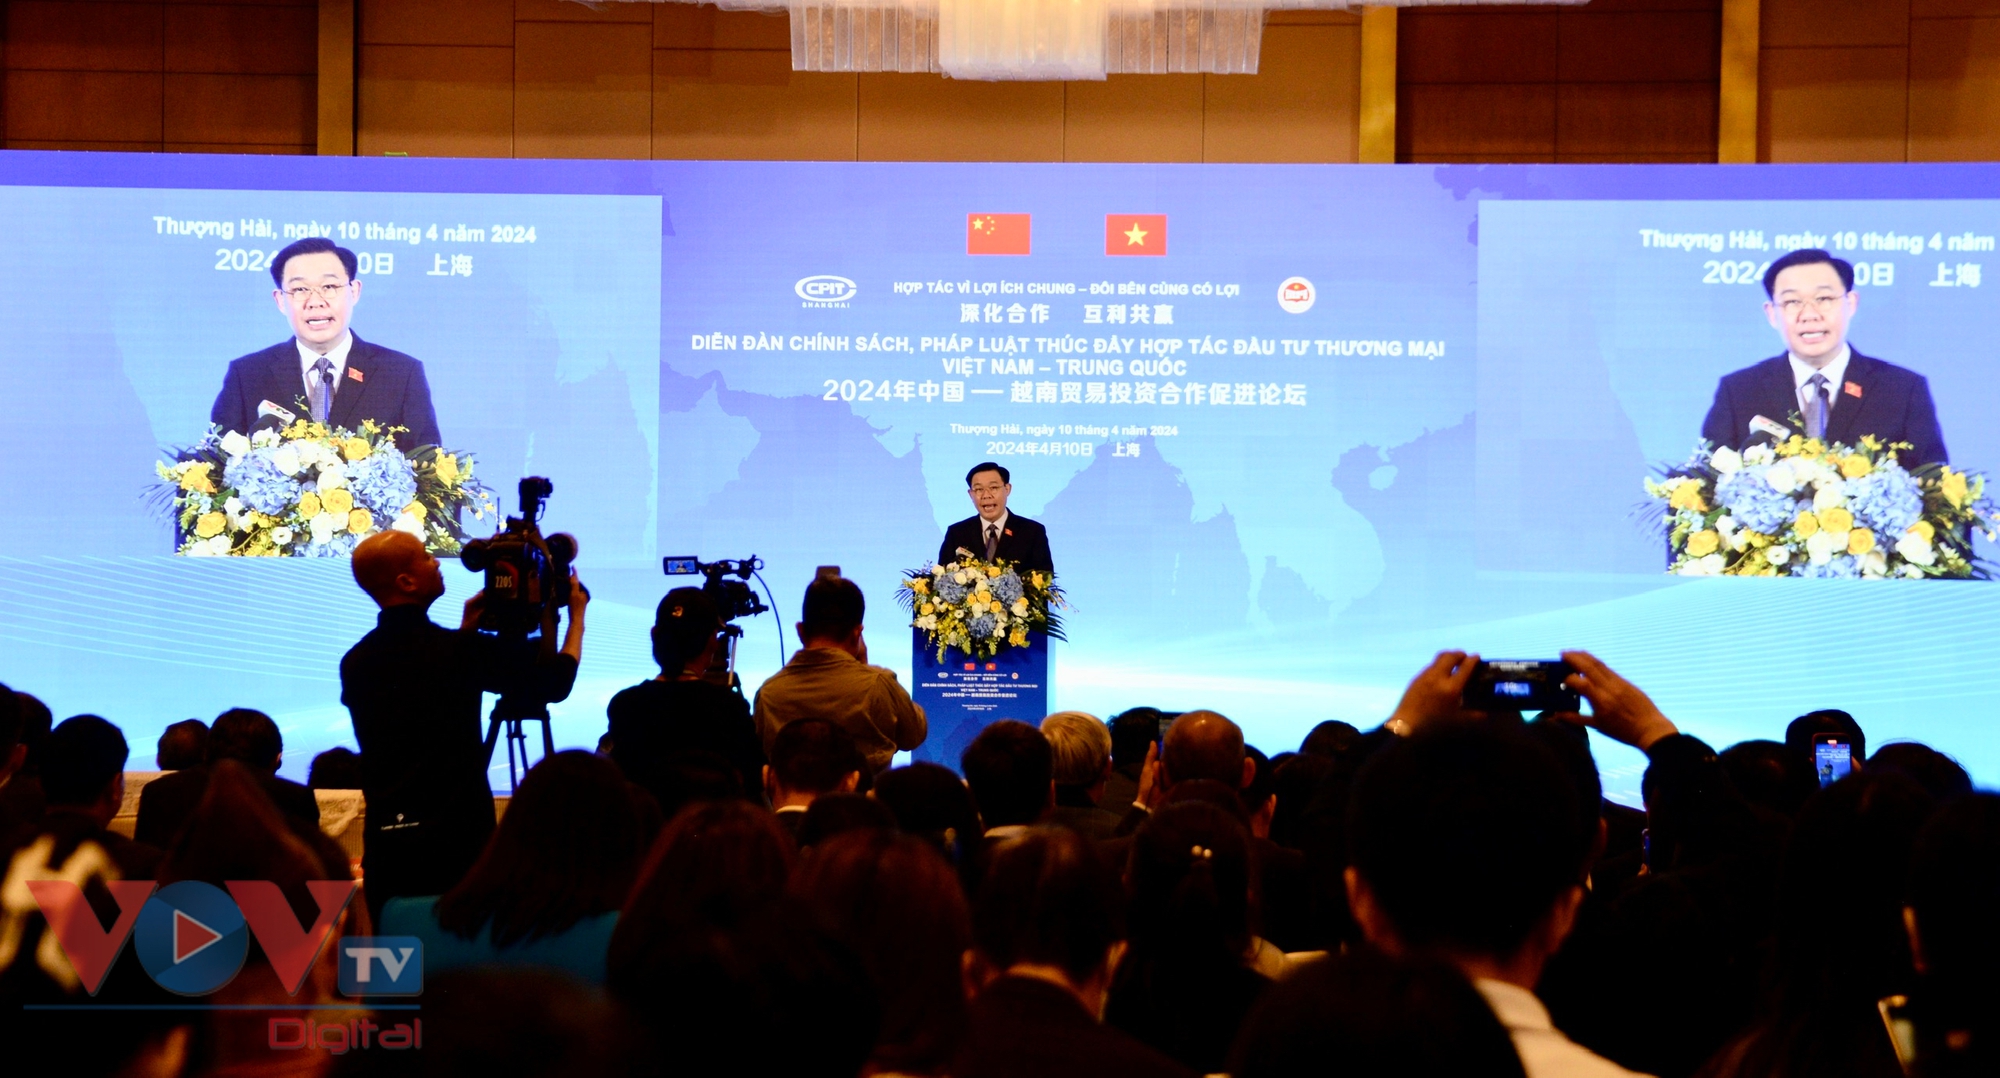 Chủ tịch Quốc hội dự Diễn đàn Chính sách pháp luật về thúc đẩy hợp tác đầu tư và thương mại Việt Nam - Trung Quốc- Ảnh 1.